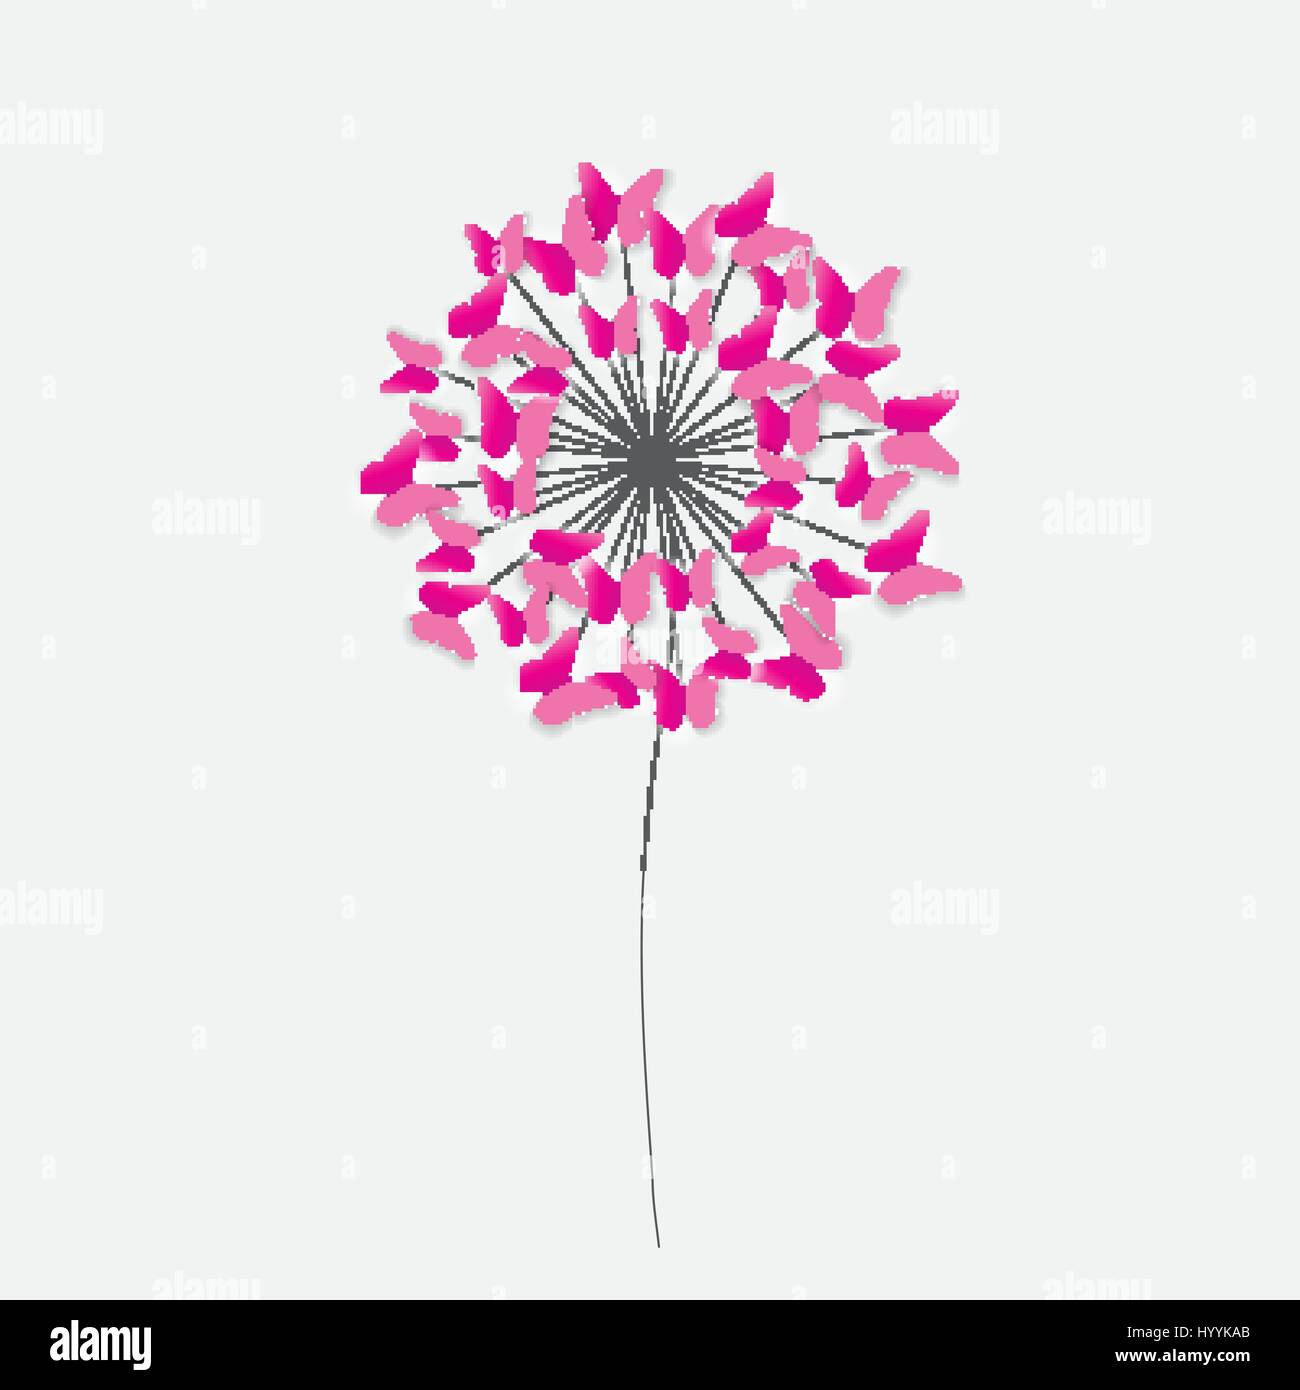 Abstrakte Scherenschnitt Schmetterling Blume Hintergrund heraus. Vektor-Illus Stock Vektor